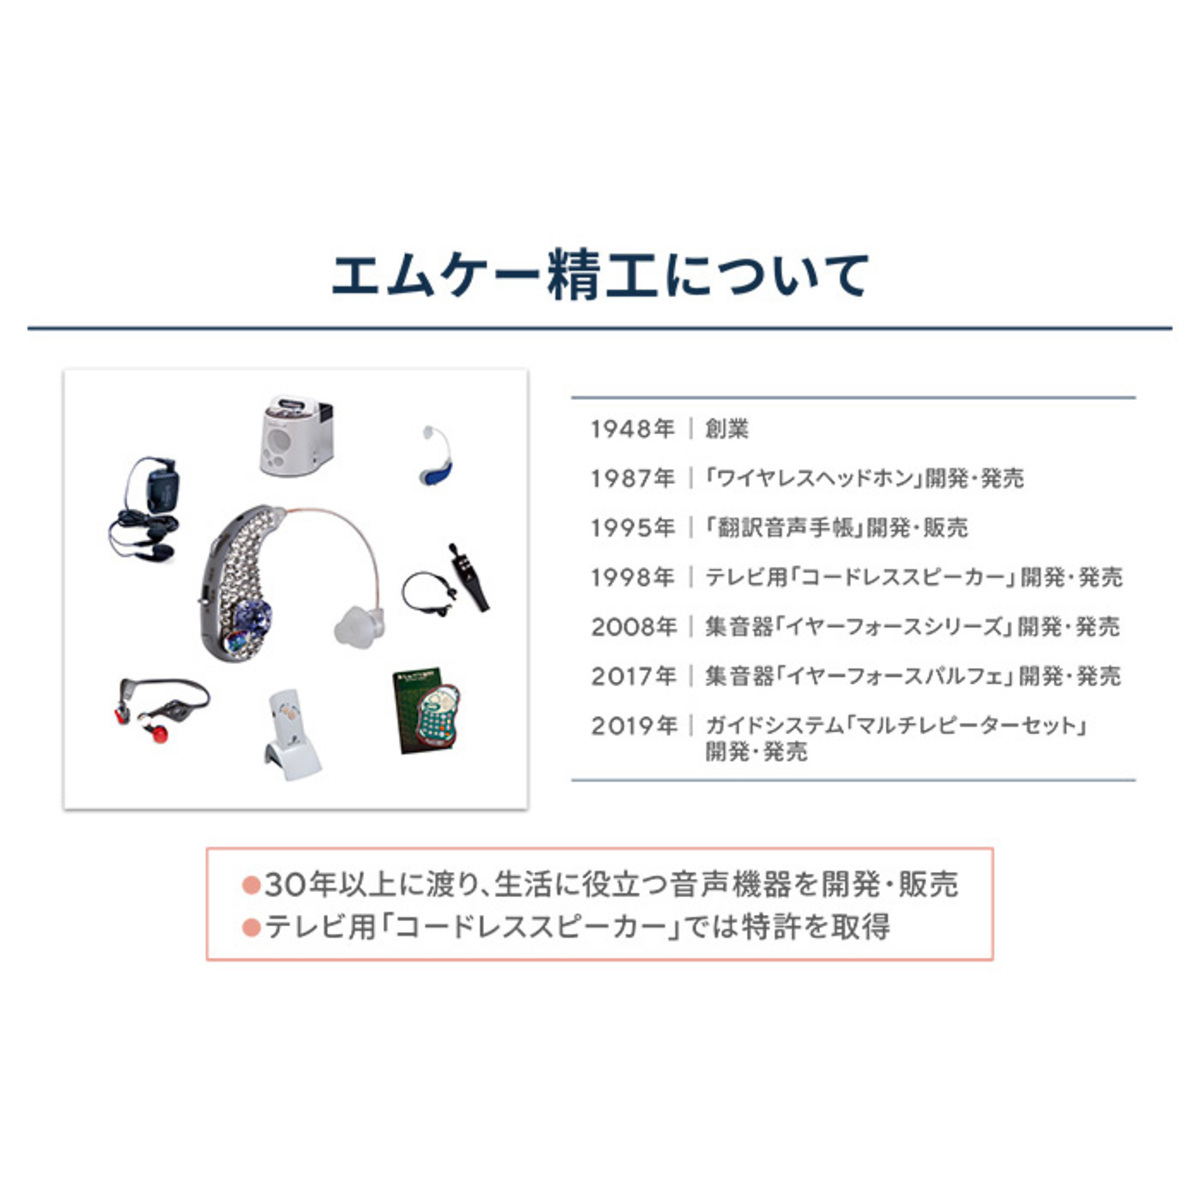 イヤーフォースパルフェ 耳かけ型集音器 - QVC.jp